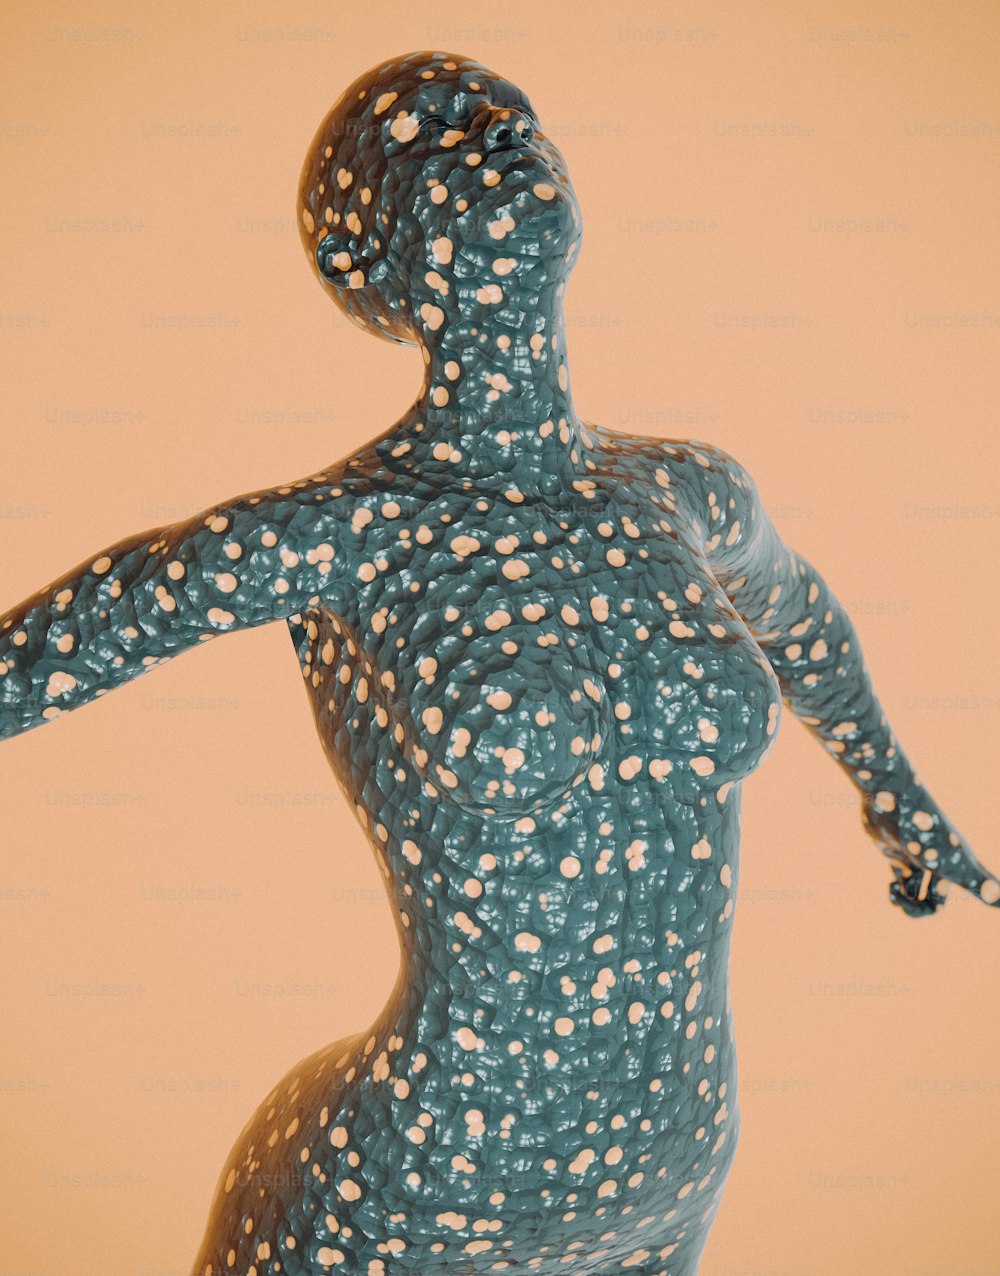 그녀의 몸에 점이있는 여성의 조각